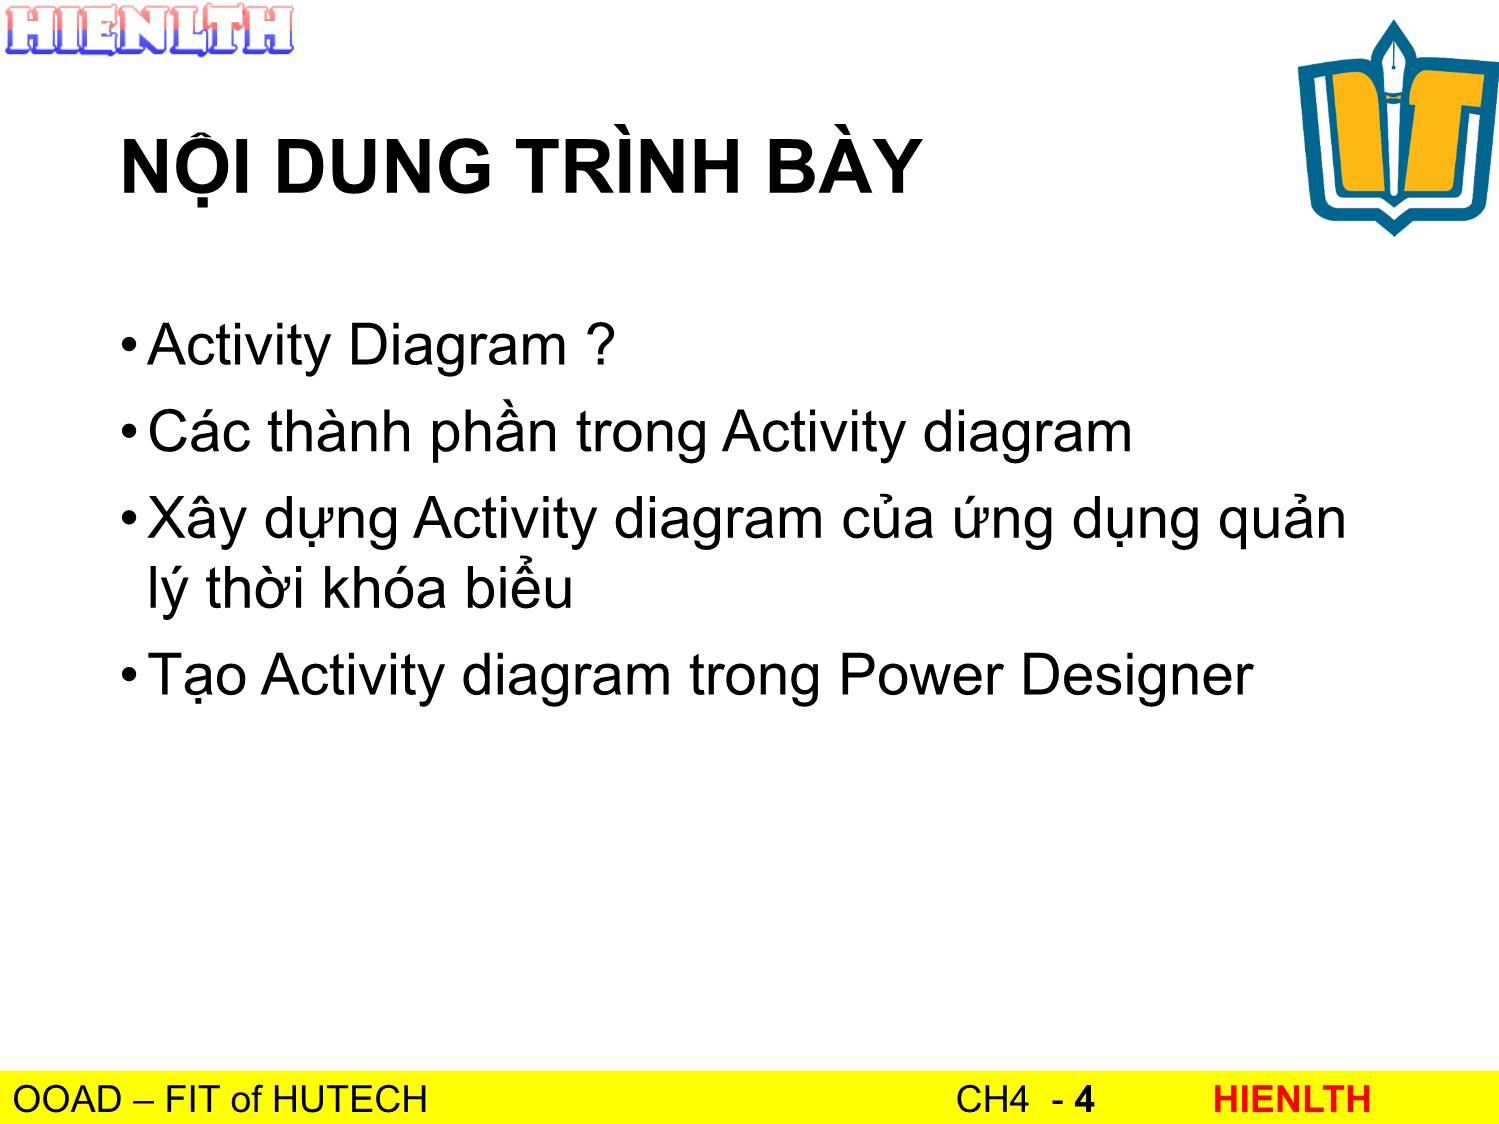 Bài giảng Phân tích thiết kế hướng đối tượng - Bài 4: Activity Diagram - Lương Trần Hy Hiến trang 4